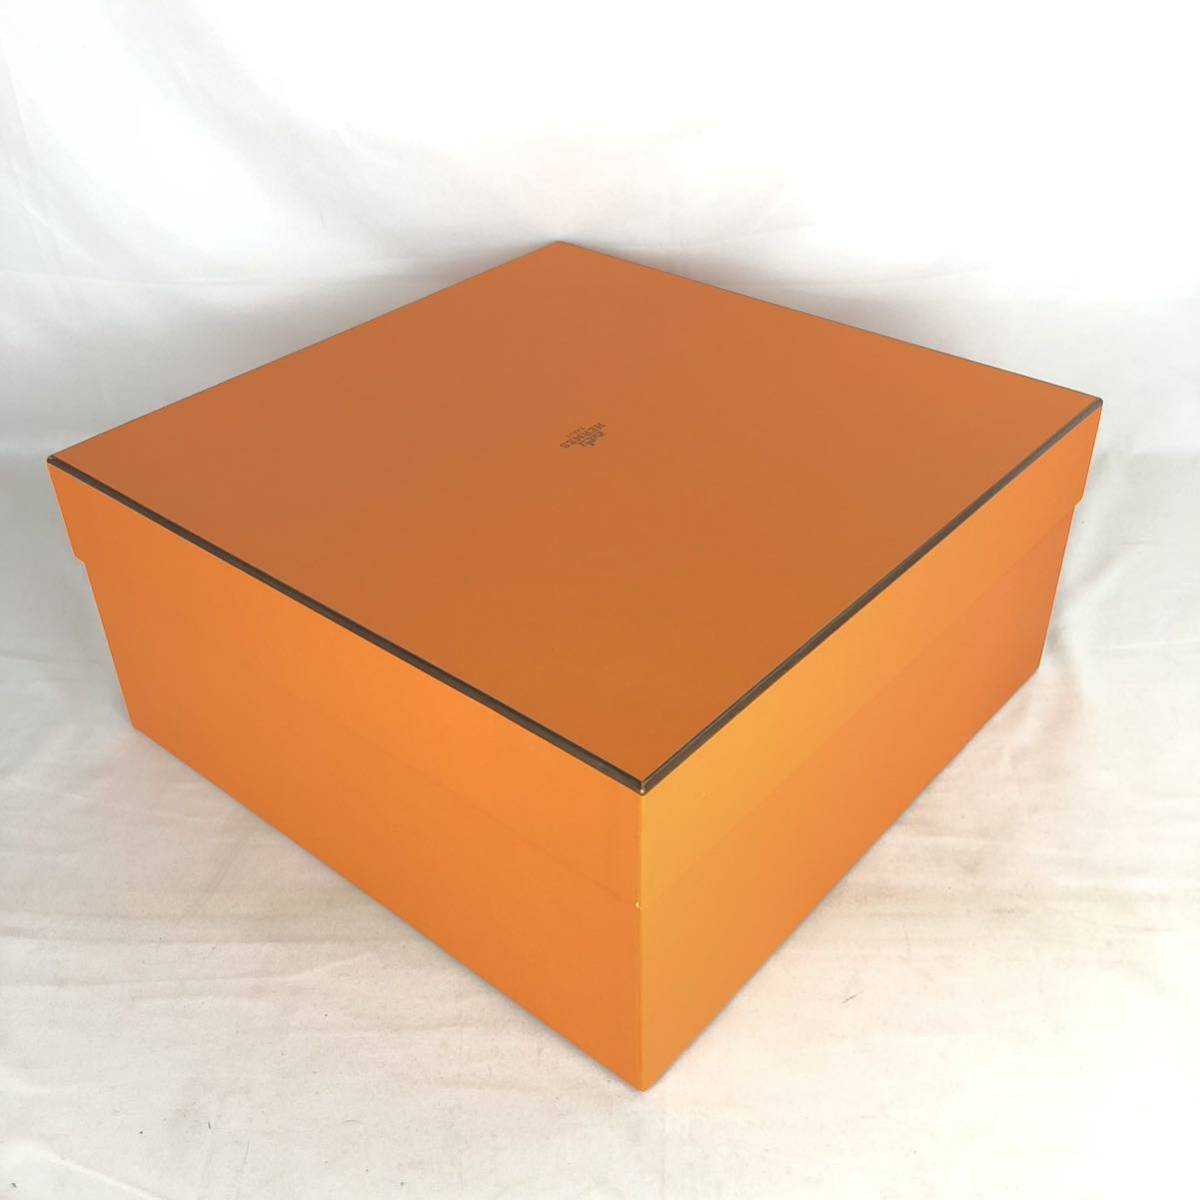 HERMES エルメス 空箱 BOX 空き箱 1312 オレンジ バッグ バーキンガーデンパーティ ケリー 等 大型 ボックス 鞄_画像5